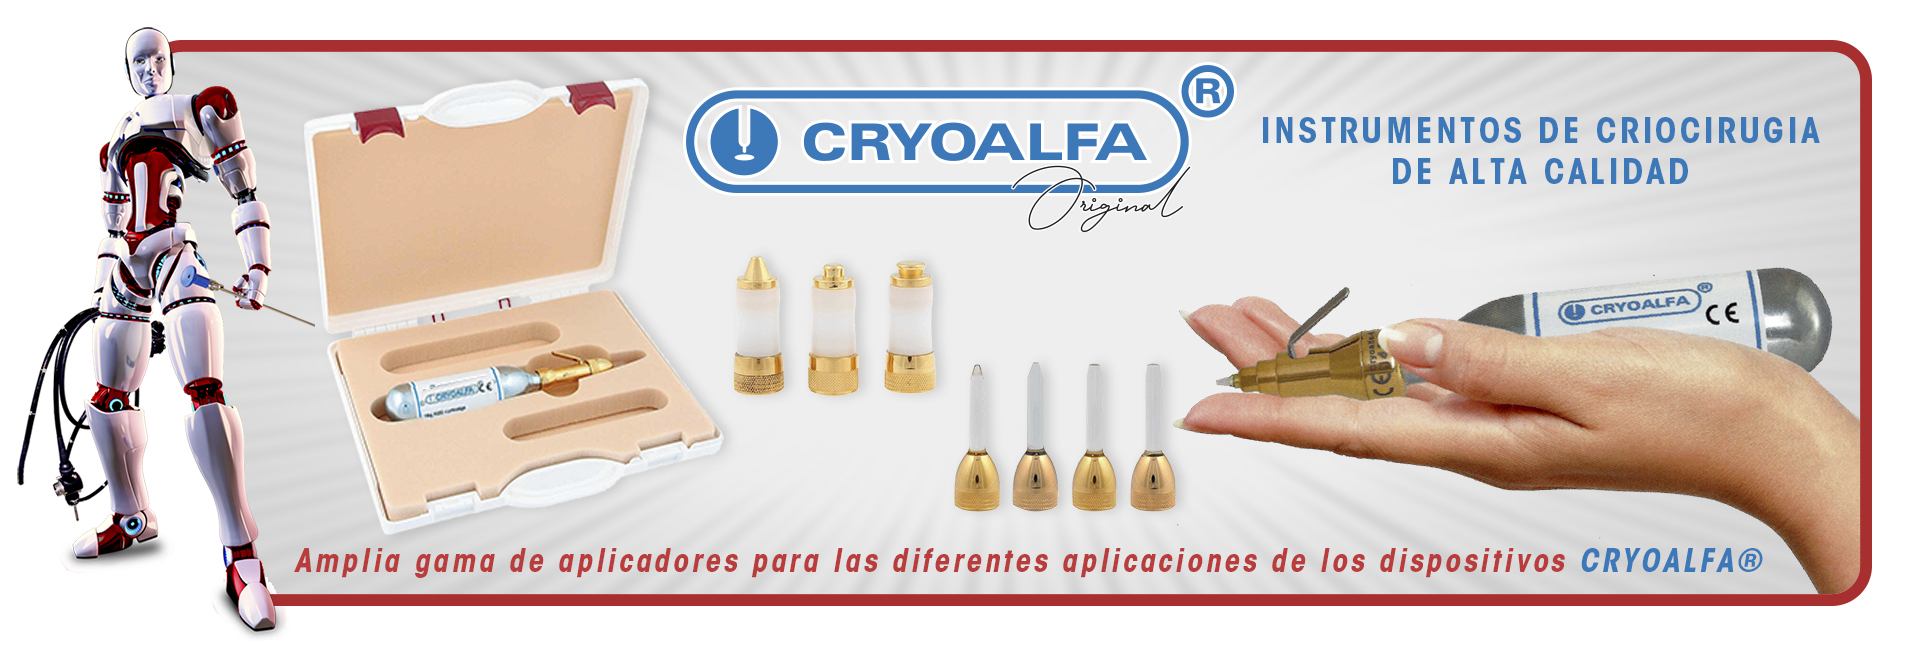 CRYOALFA® es un dispositivo móvil y eficaz para la eliminación de verrugas, lesiones cutáneas, fibromas, queratosis, hemagiomas, manchas de envejecimiento y otras lesiones cutáneas frecuentes.